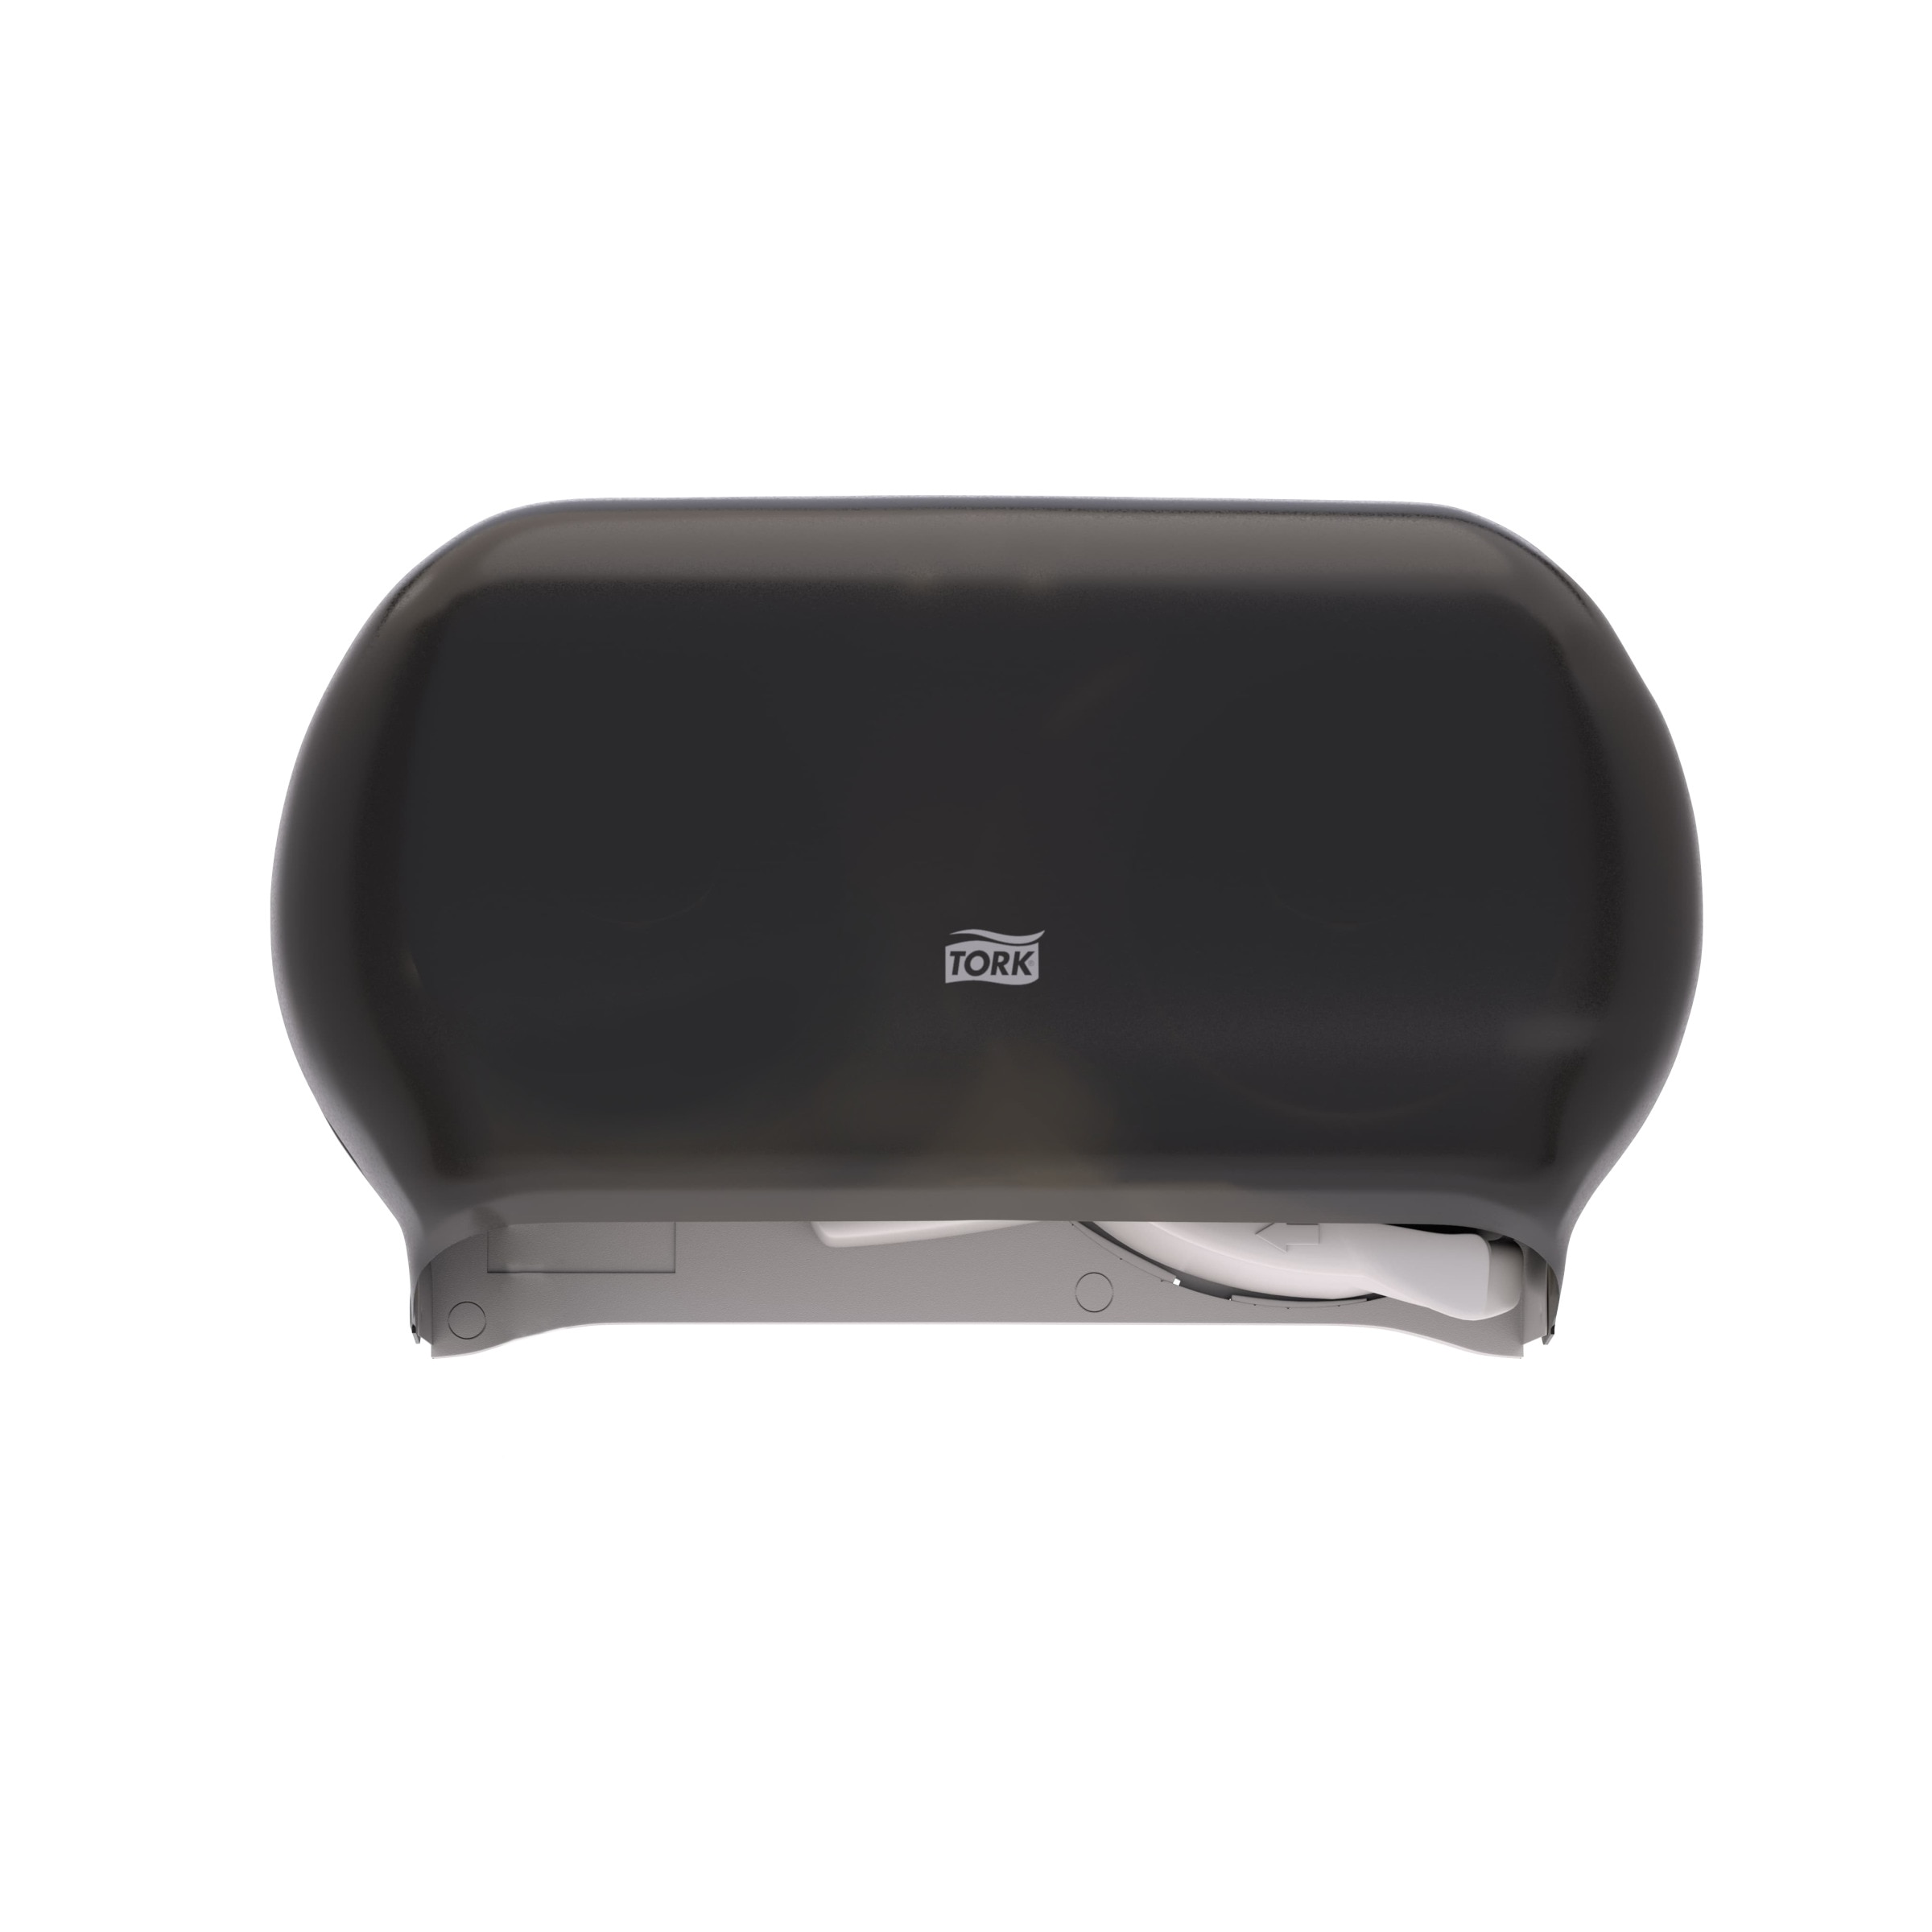 Tork High Capacity Bath Tissue Roll Dispenser | 555628 | Toilet paper